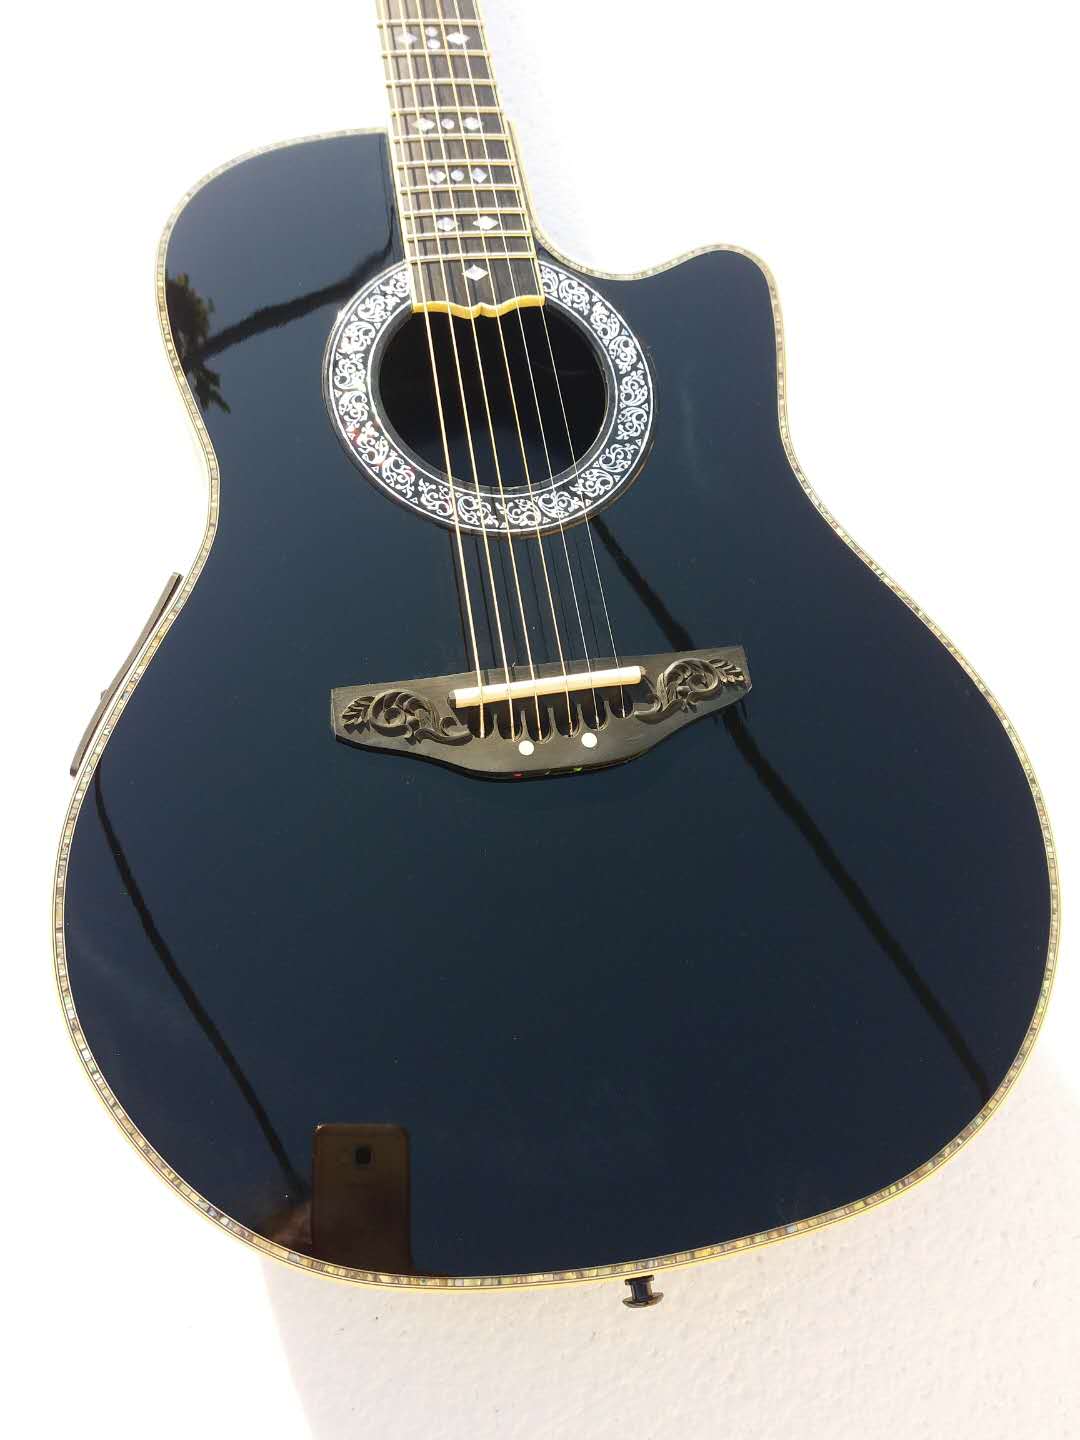 탄소 섬유 바디 6 문자열 Ovation 어쿠스틱 전기 기타 흑단 Fretboard F-5T 프리 엠프 픽업 EQ 전문 민속 Guitare